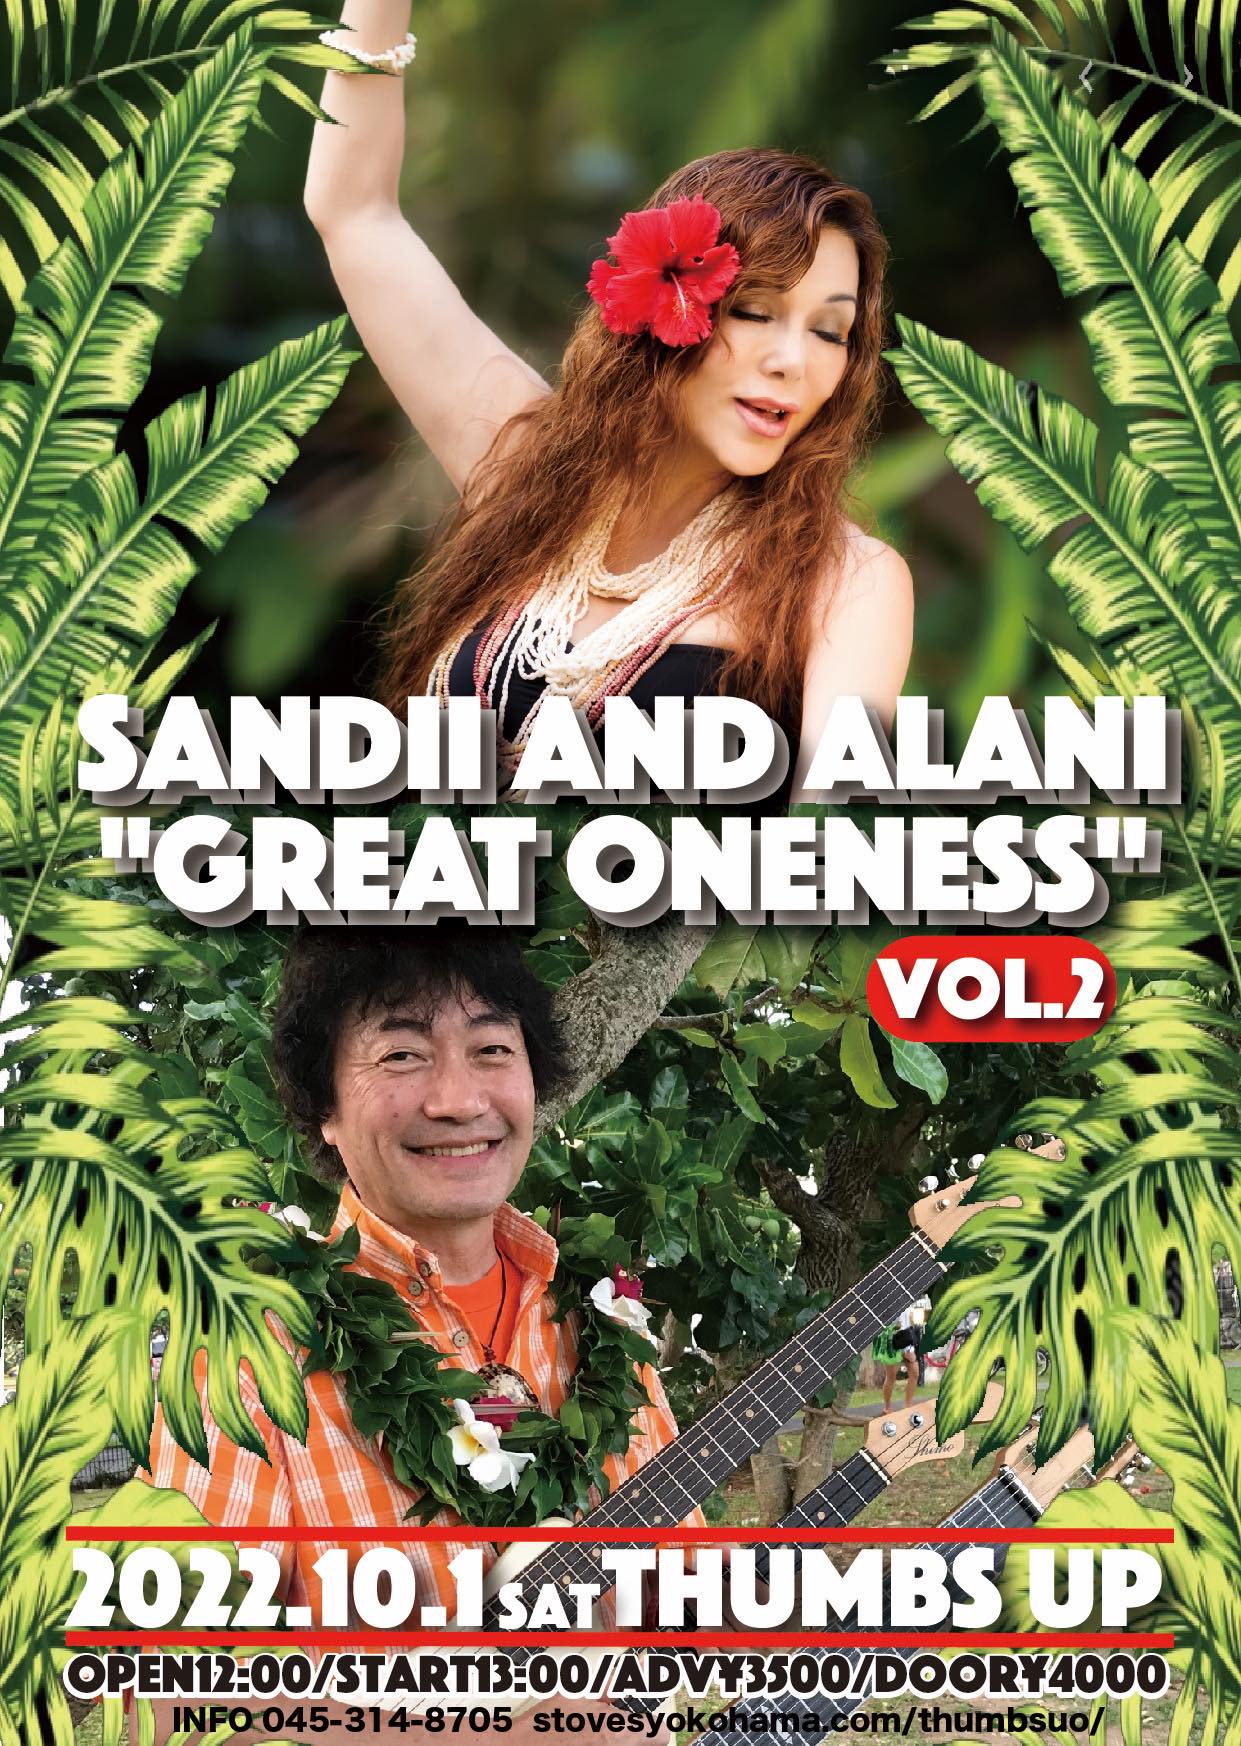 神奈川 SANDII AND ALANI "GREAT ONENESS" Vol. 2 @ Thumbs Up | 名古屋市 | 愛知県 | 日本